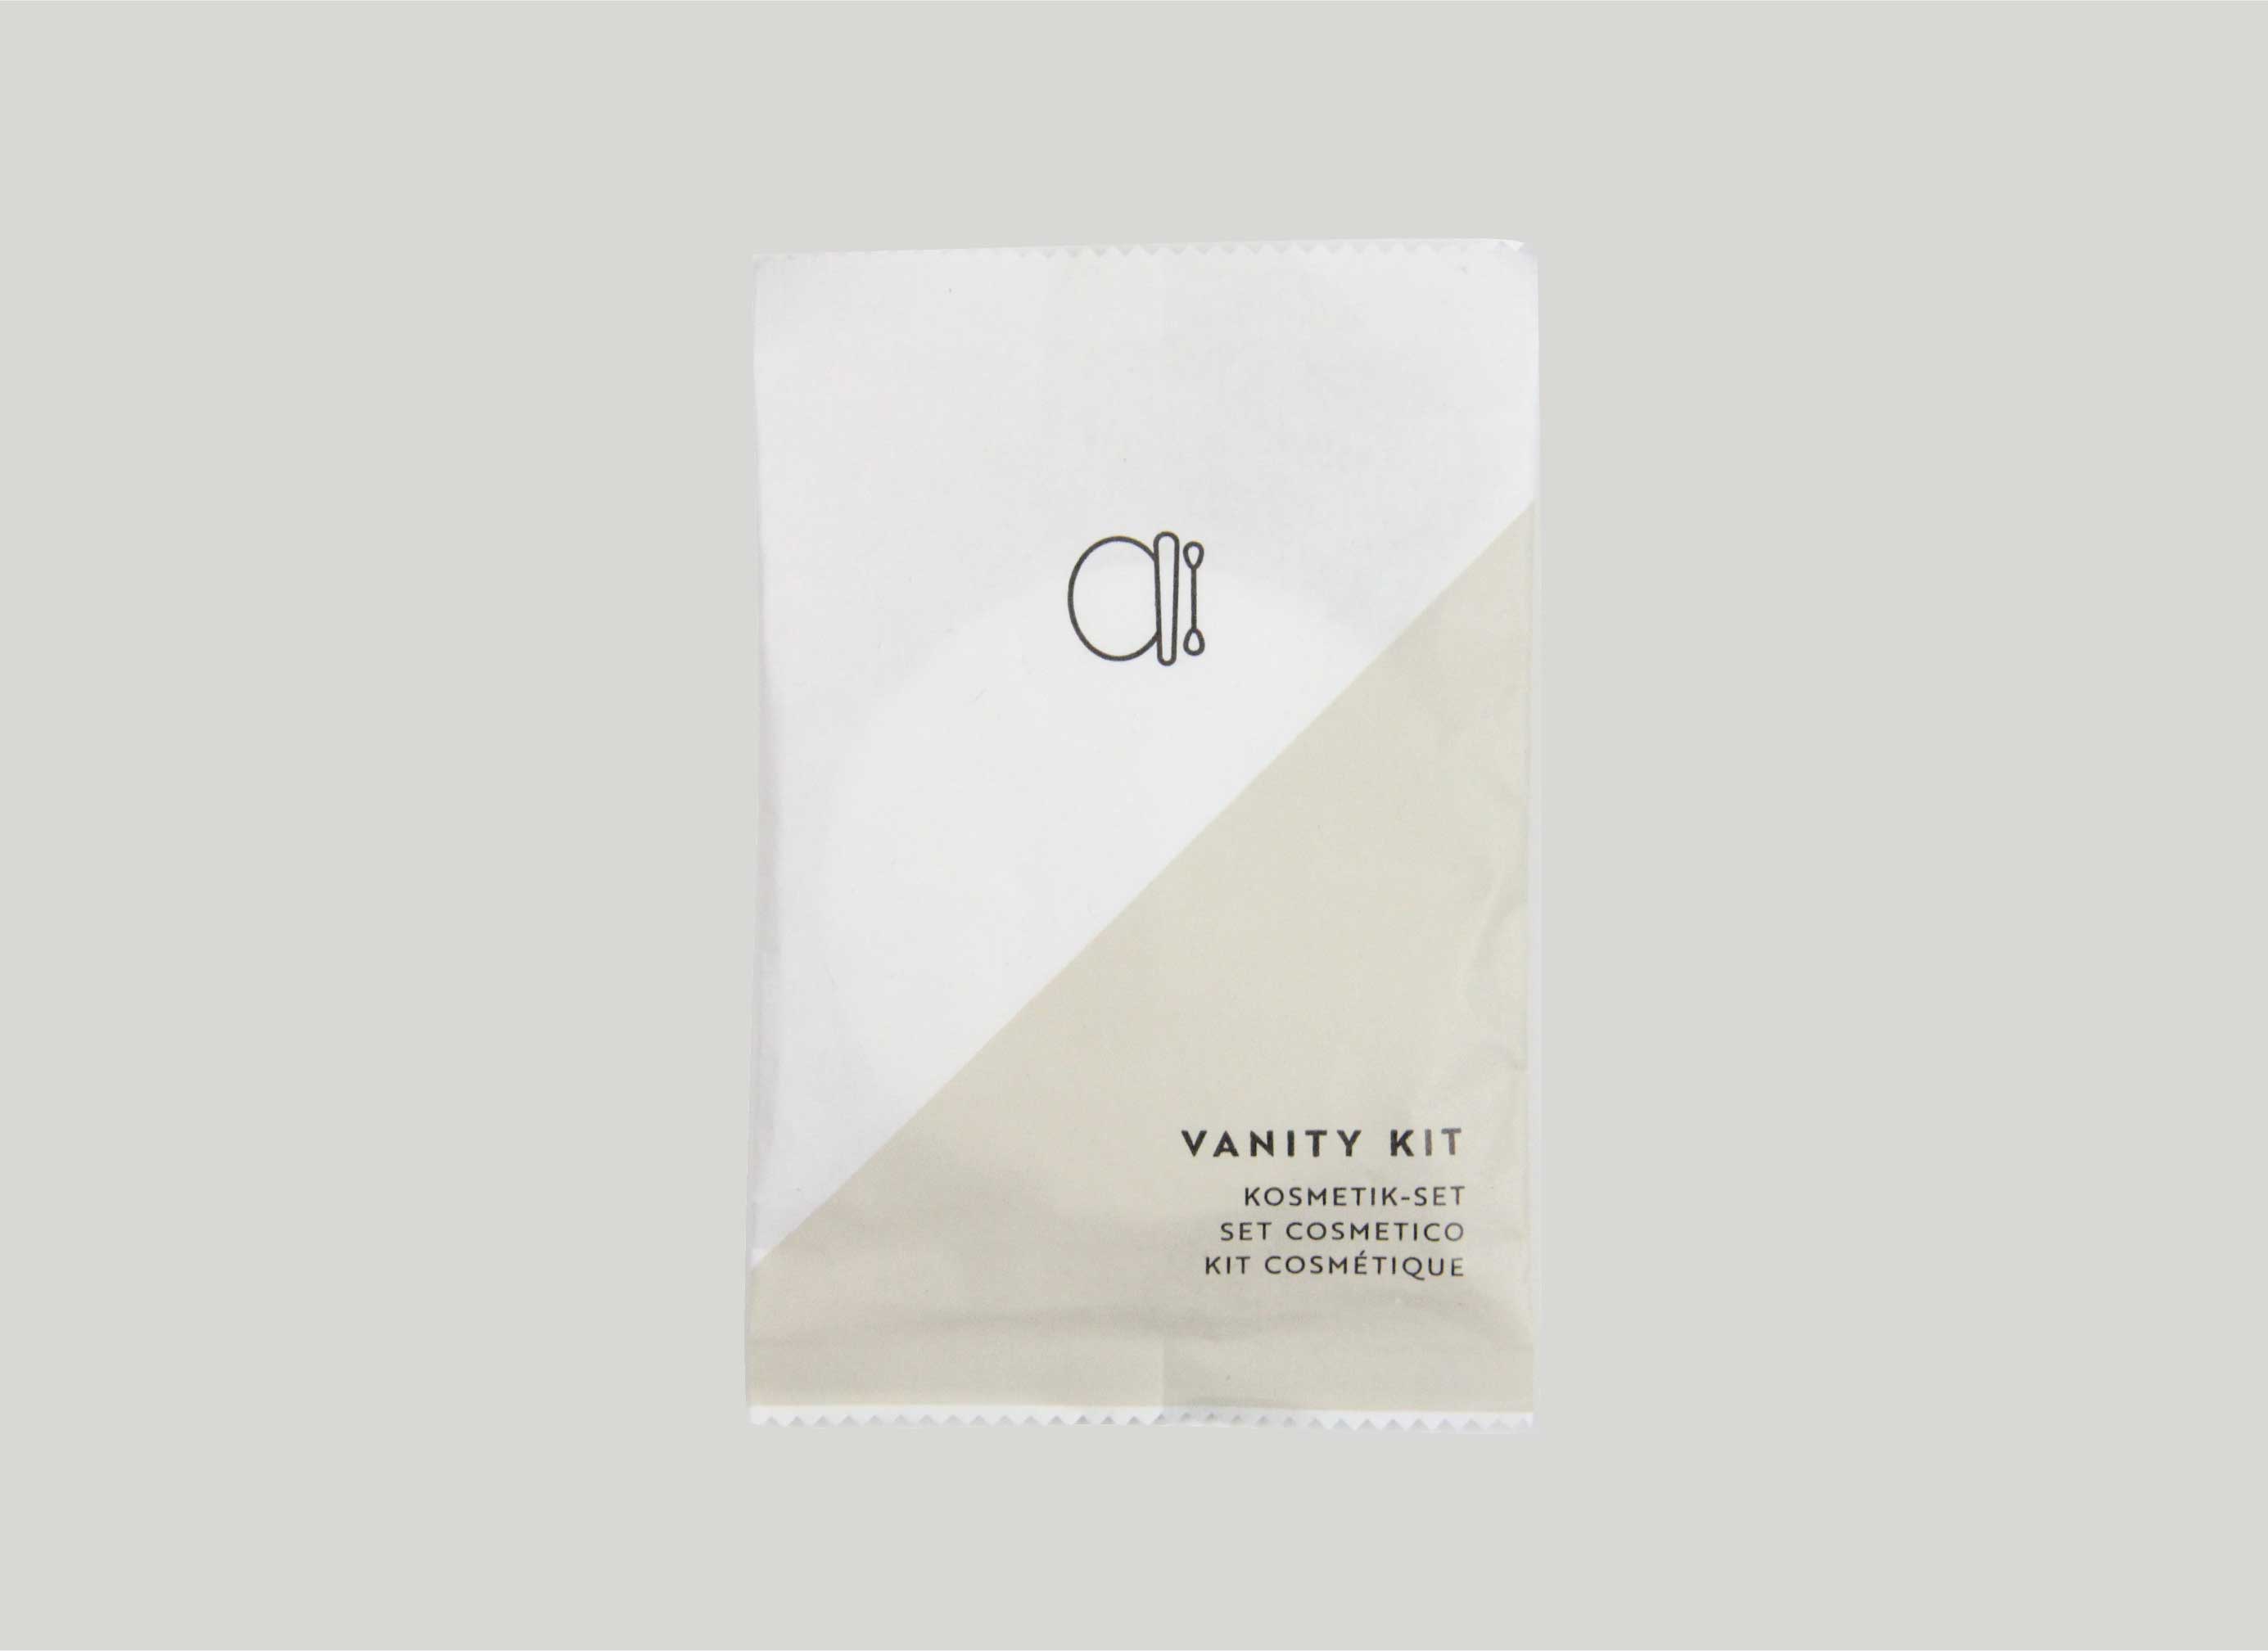 BASIC PAPER - Vanity Kit dans un sachet en papier